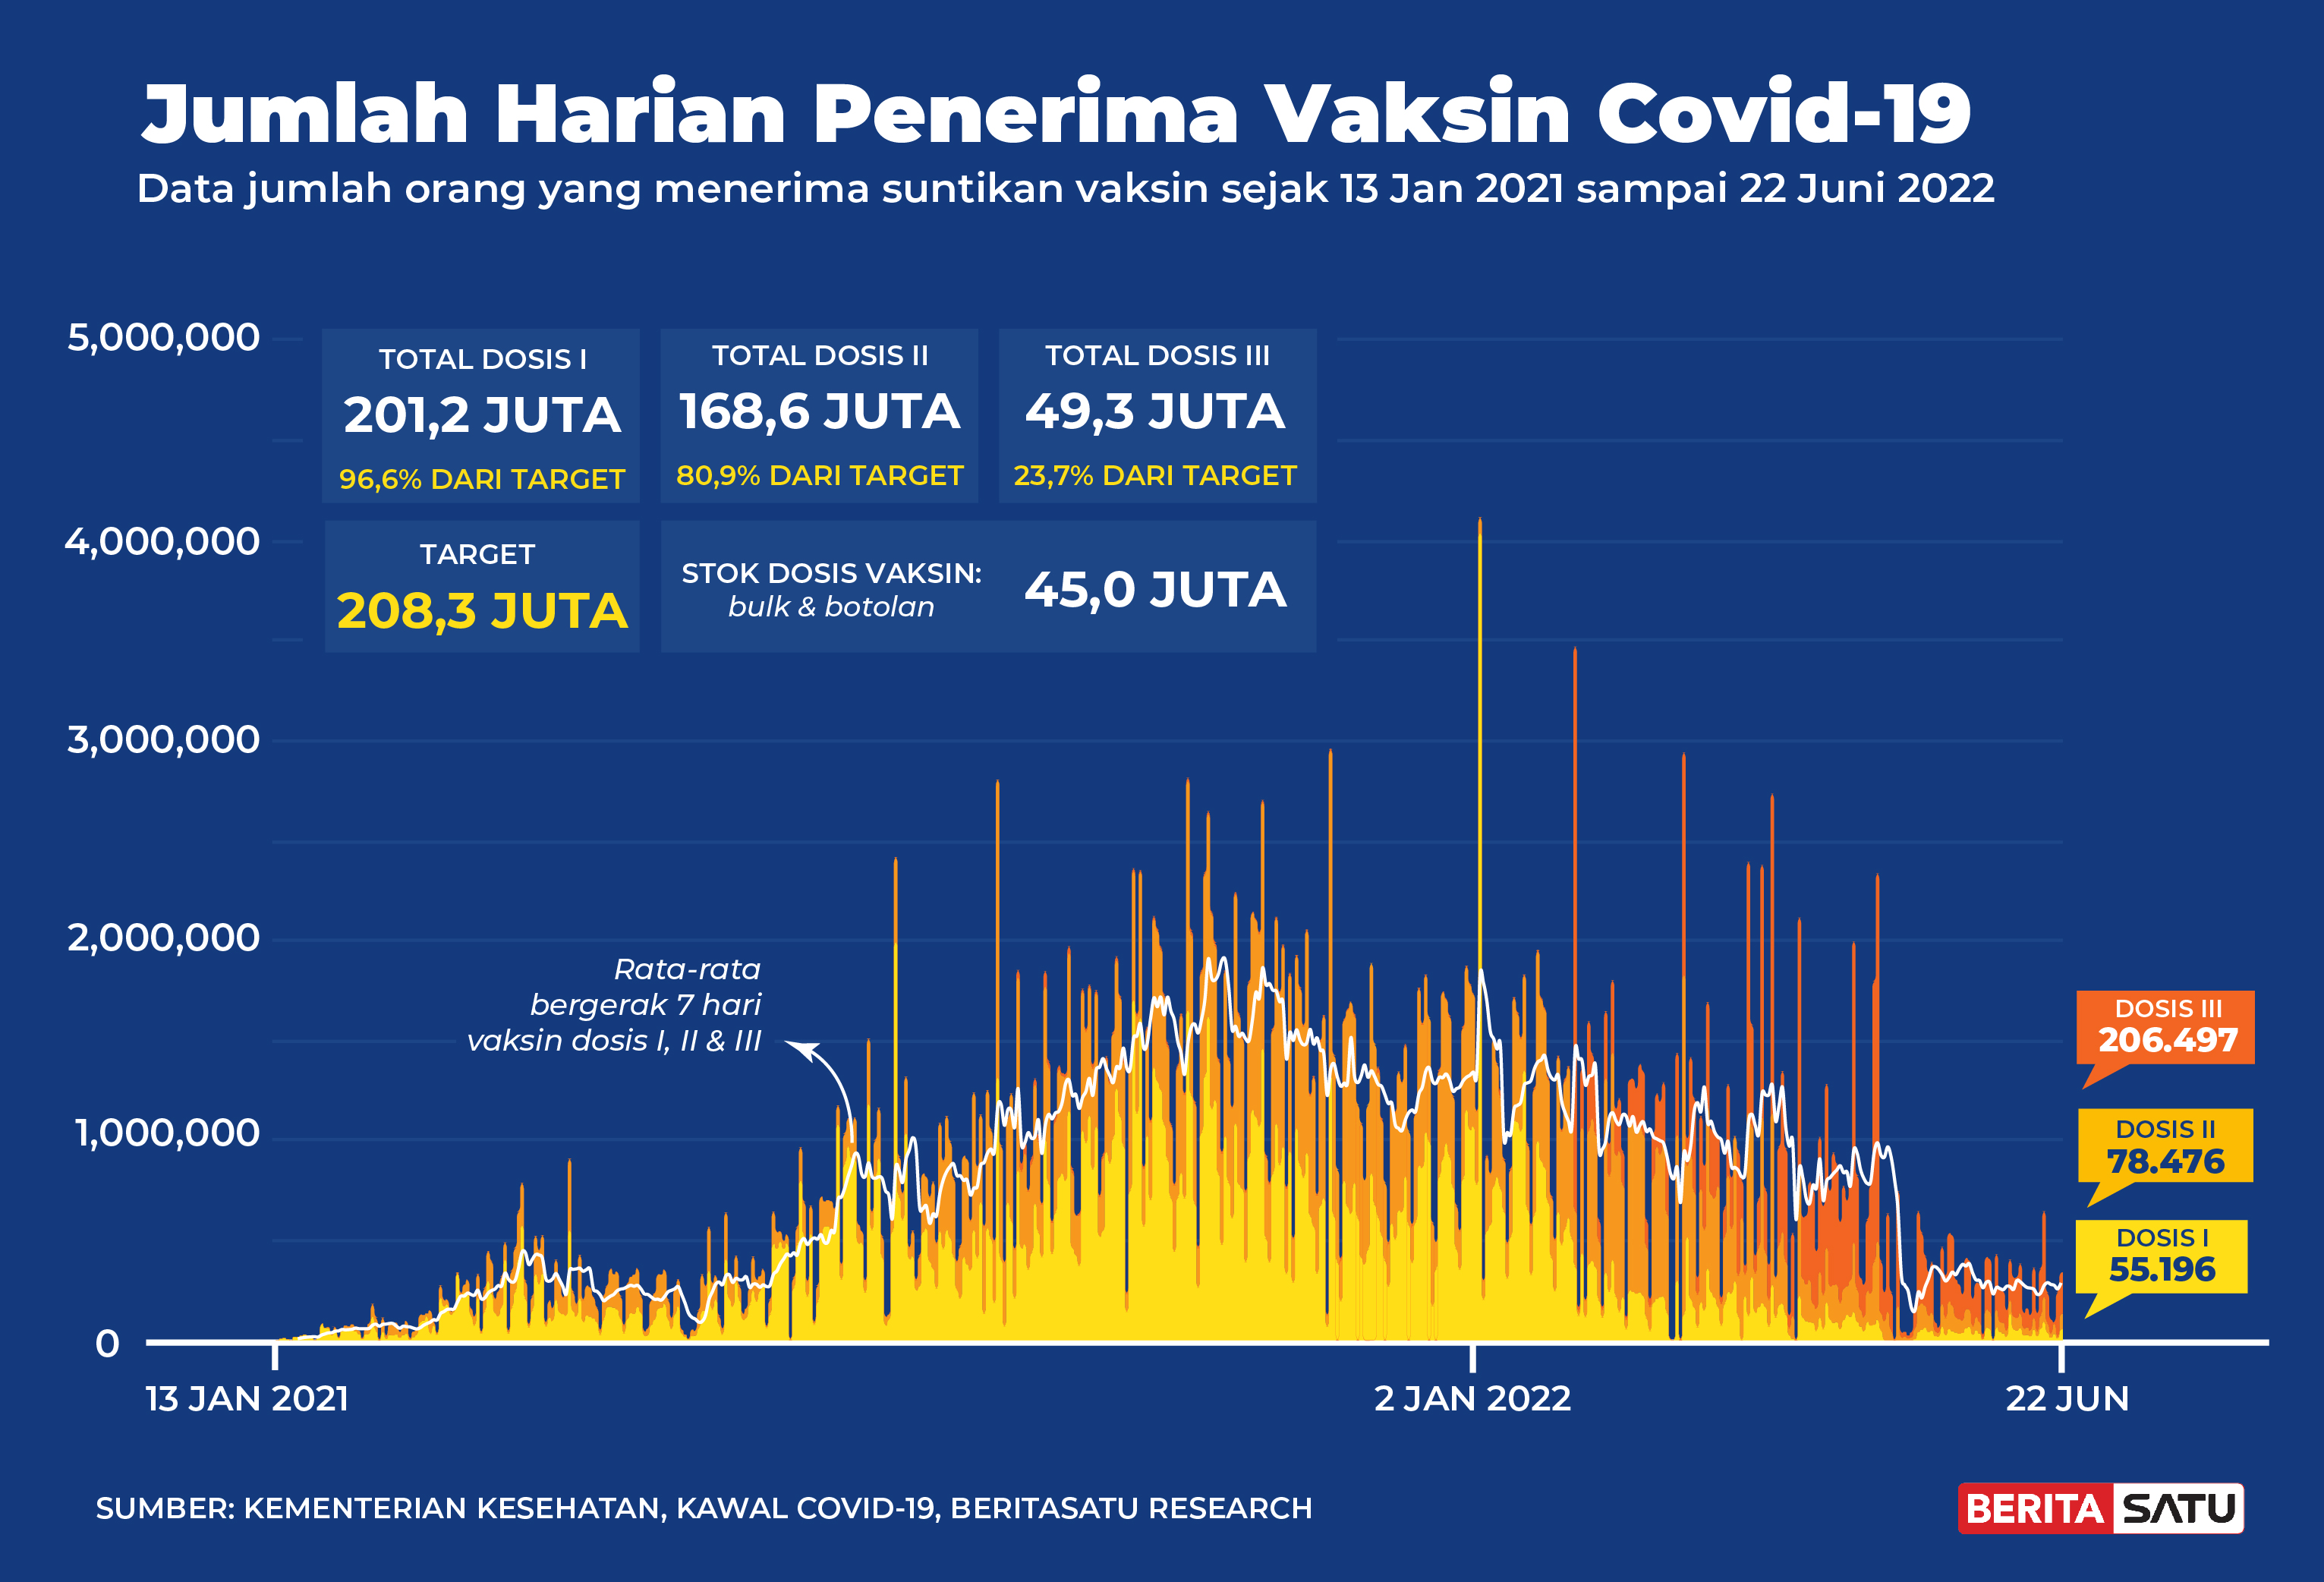 Penerima Vaksin Covid-19 di Indonesia sampai 22 Juni 2022